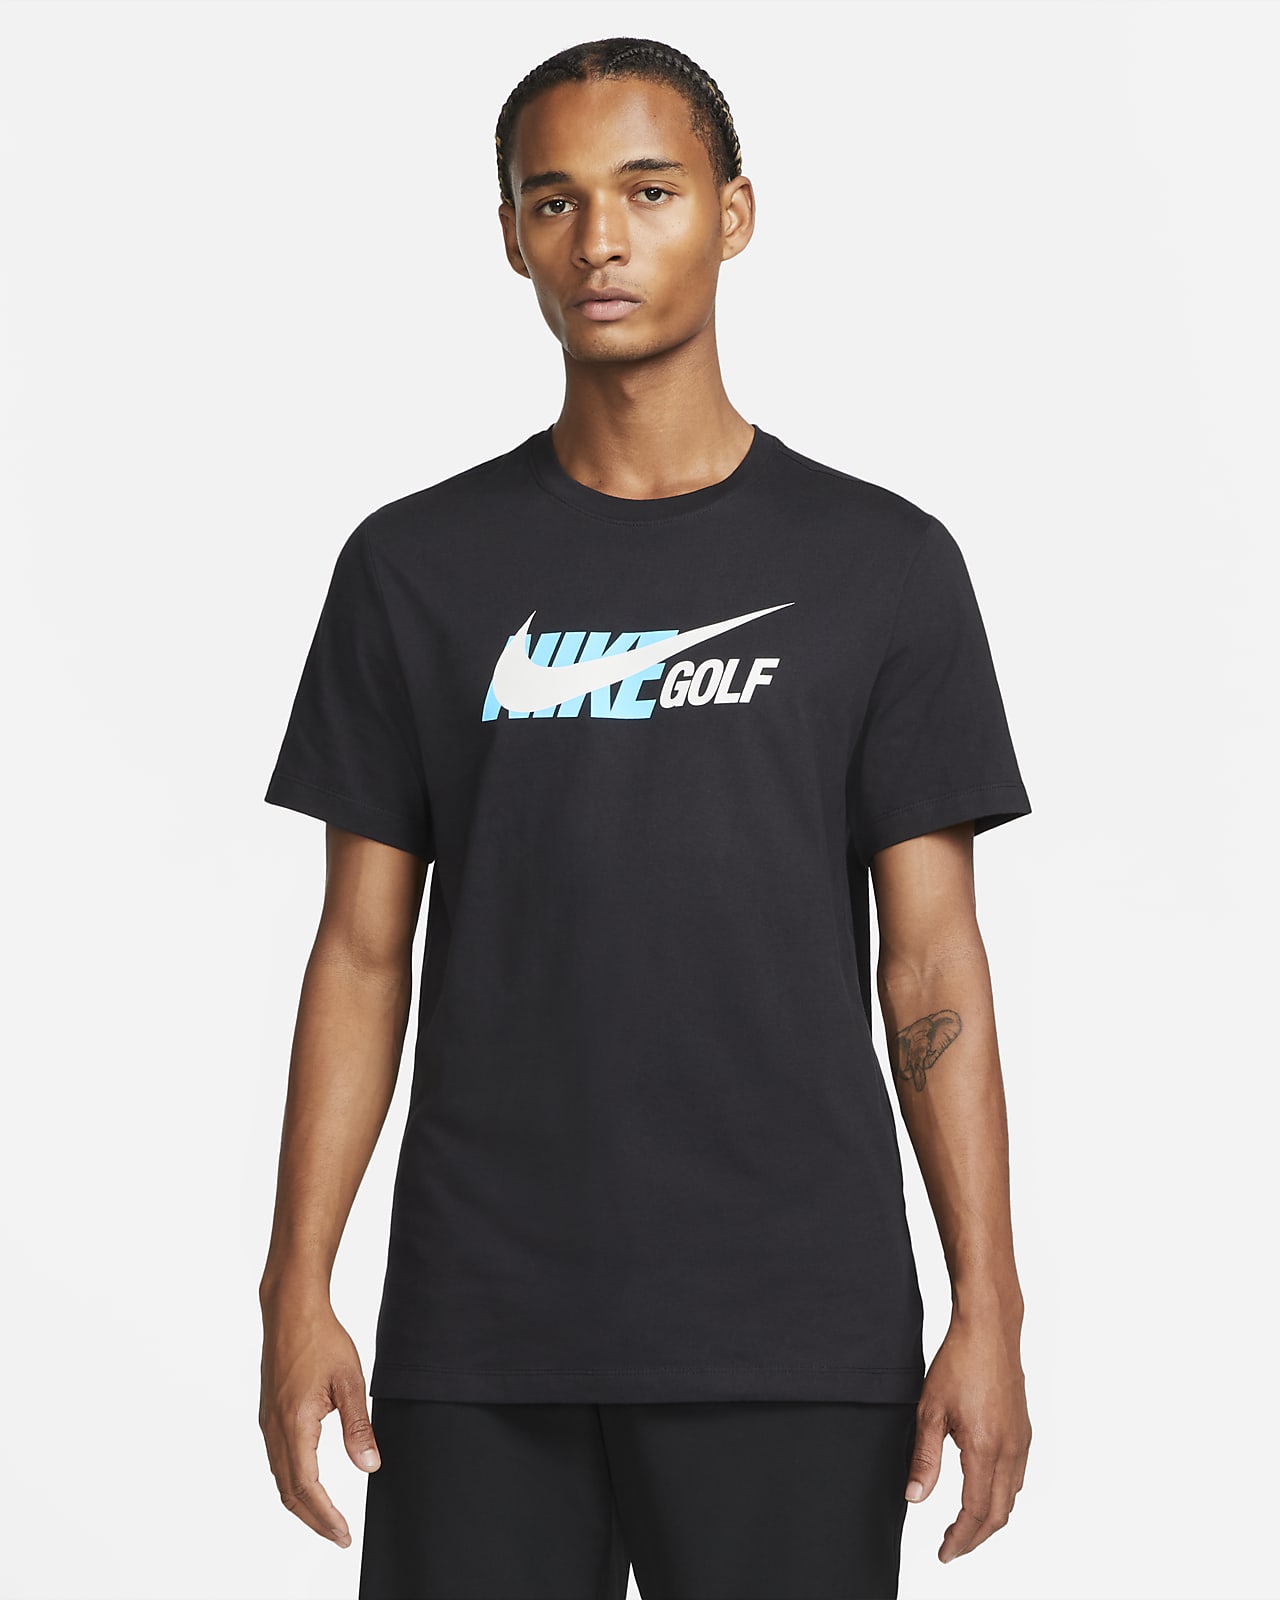 Letrista Formación Con qué frecuencia Nike Men's Golf T-Shirt. Nike.com